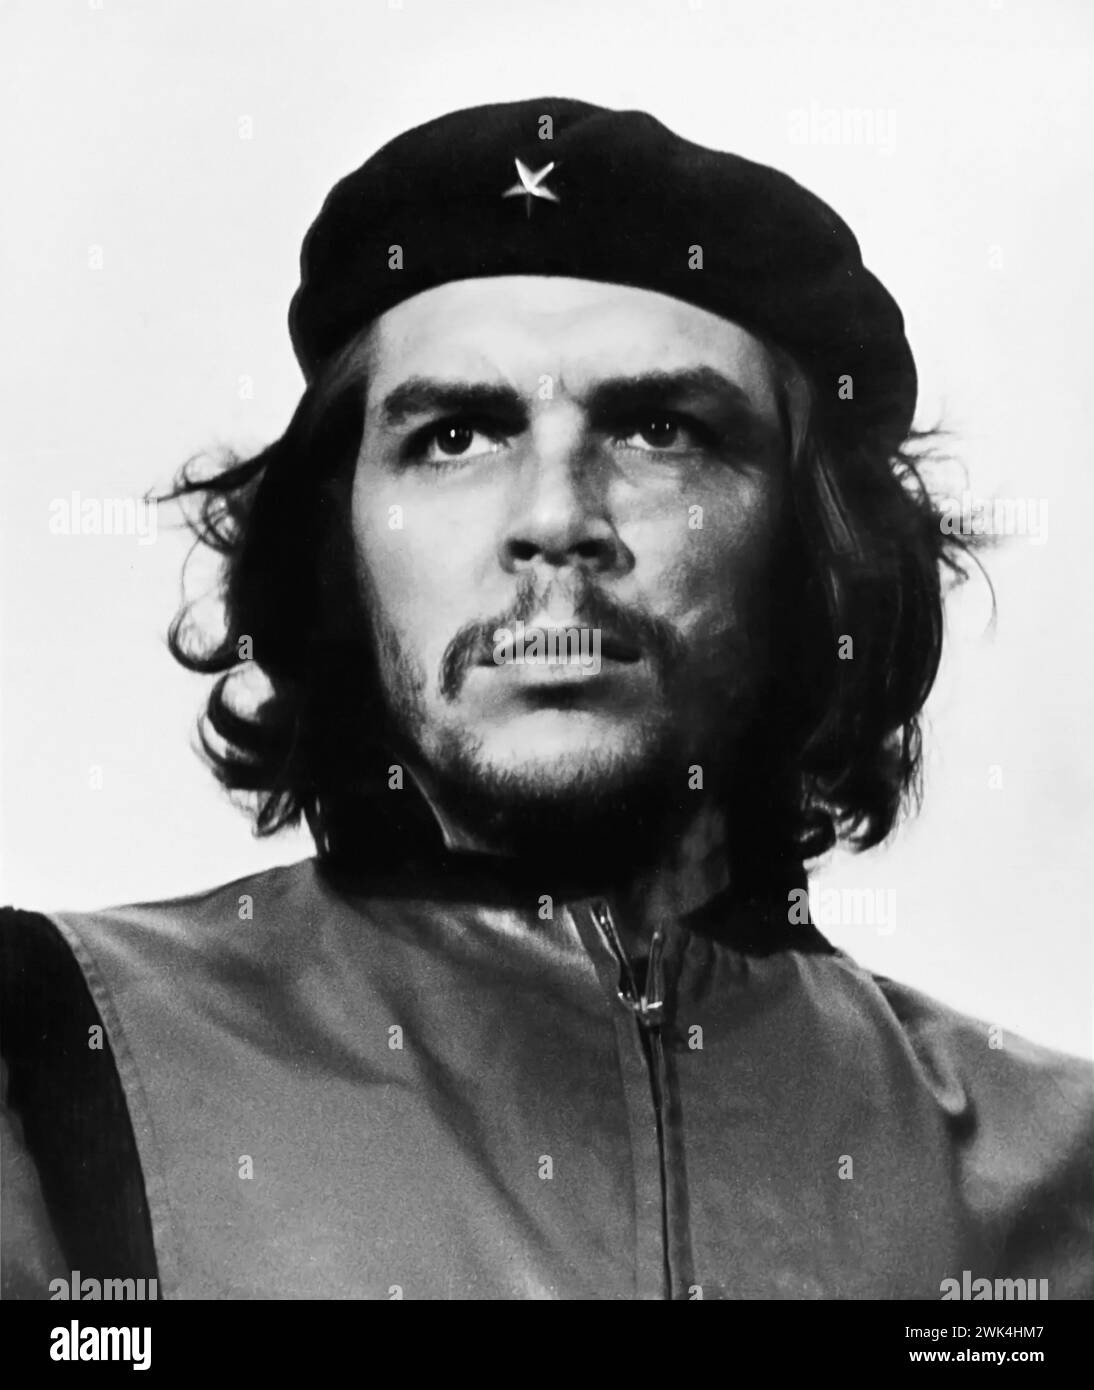 Che Guevara. Portrait du révolutionnaire marxiste né en Argentine et figure clé de la Révolution cubaine, Ernesto 'Che' Guevara (1928-1967). Photo Alberto Korda, 1960 Banque D'Images